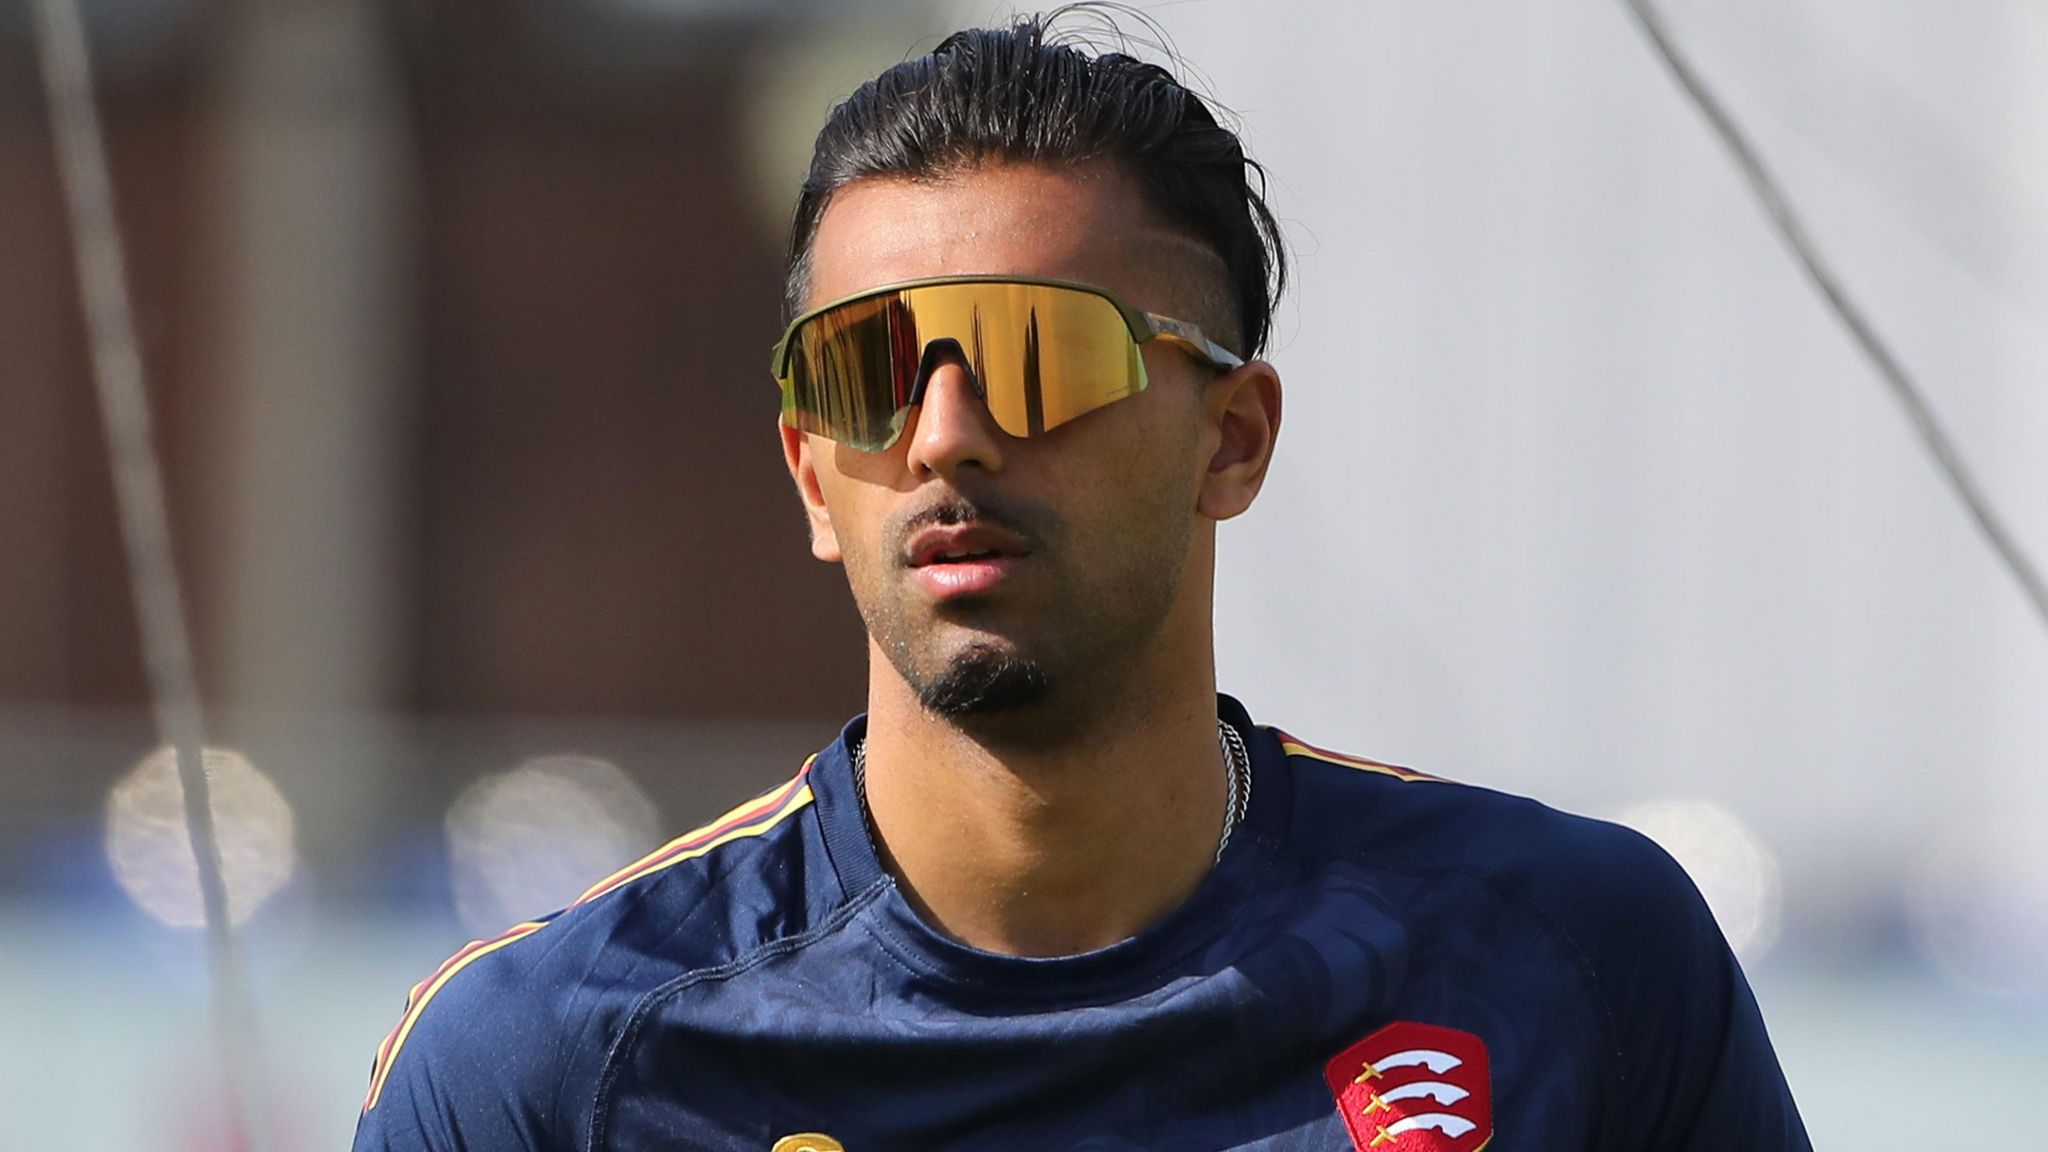 Feroze Khushi wearing sunglasses while training